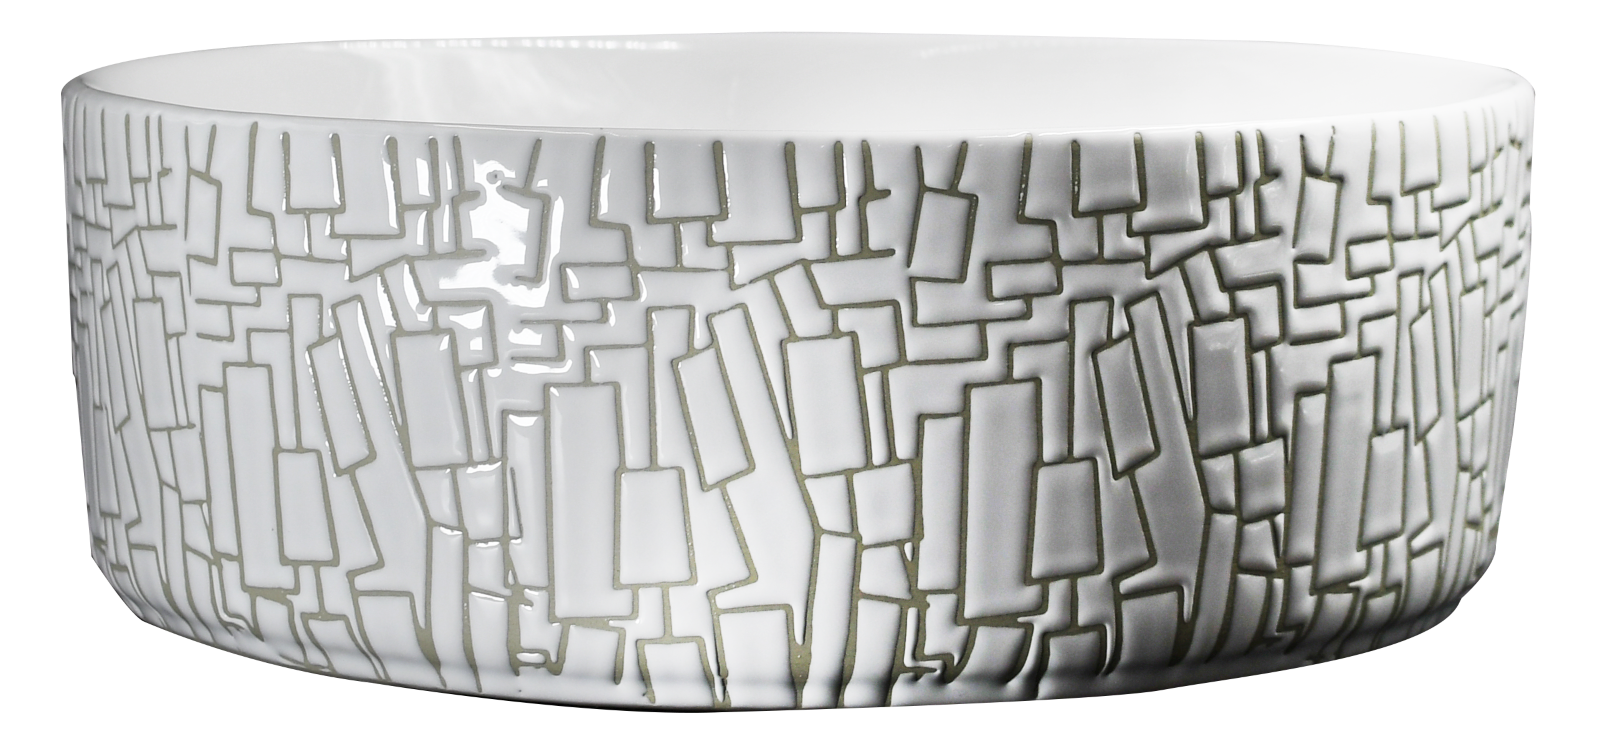 Lavabo Cerámico para Baño SUM, forma circular en color blanco con texturas en relieve color dorado. De sobreponer, con diseño europeo ideal para todo tipo de baños. Dimensiones 40.0 x 40.0 x 14.5 cms. (base x altura x profundidad)